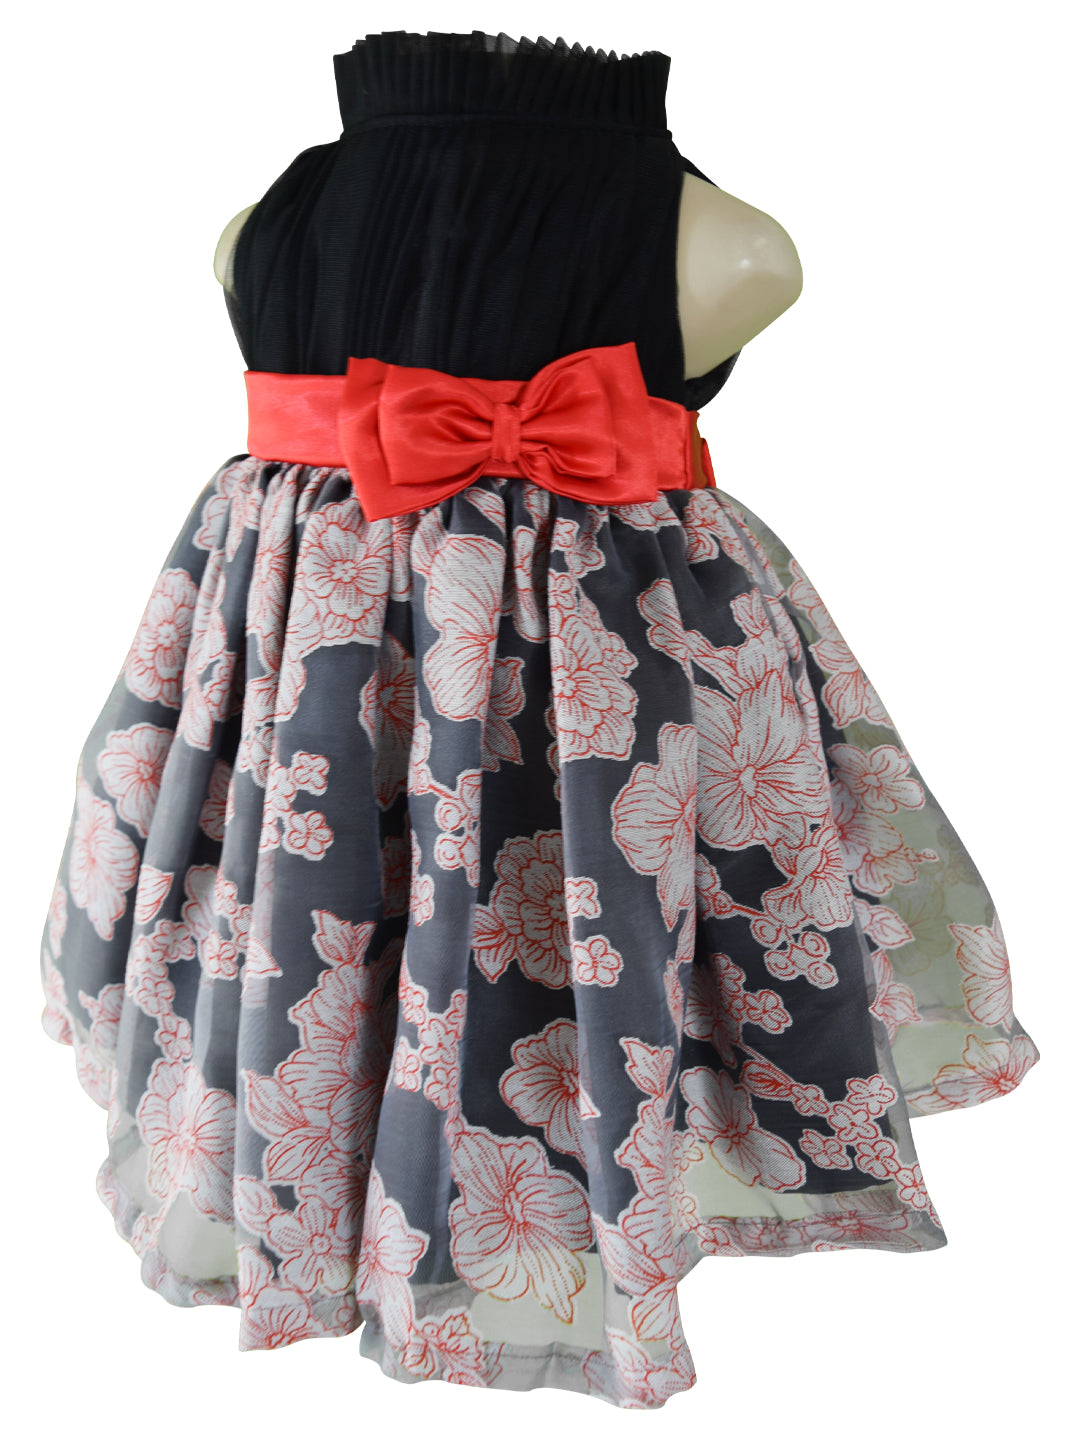 Faye Black Floral Dress for Kids